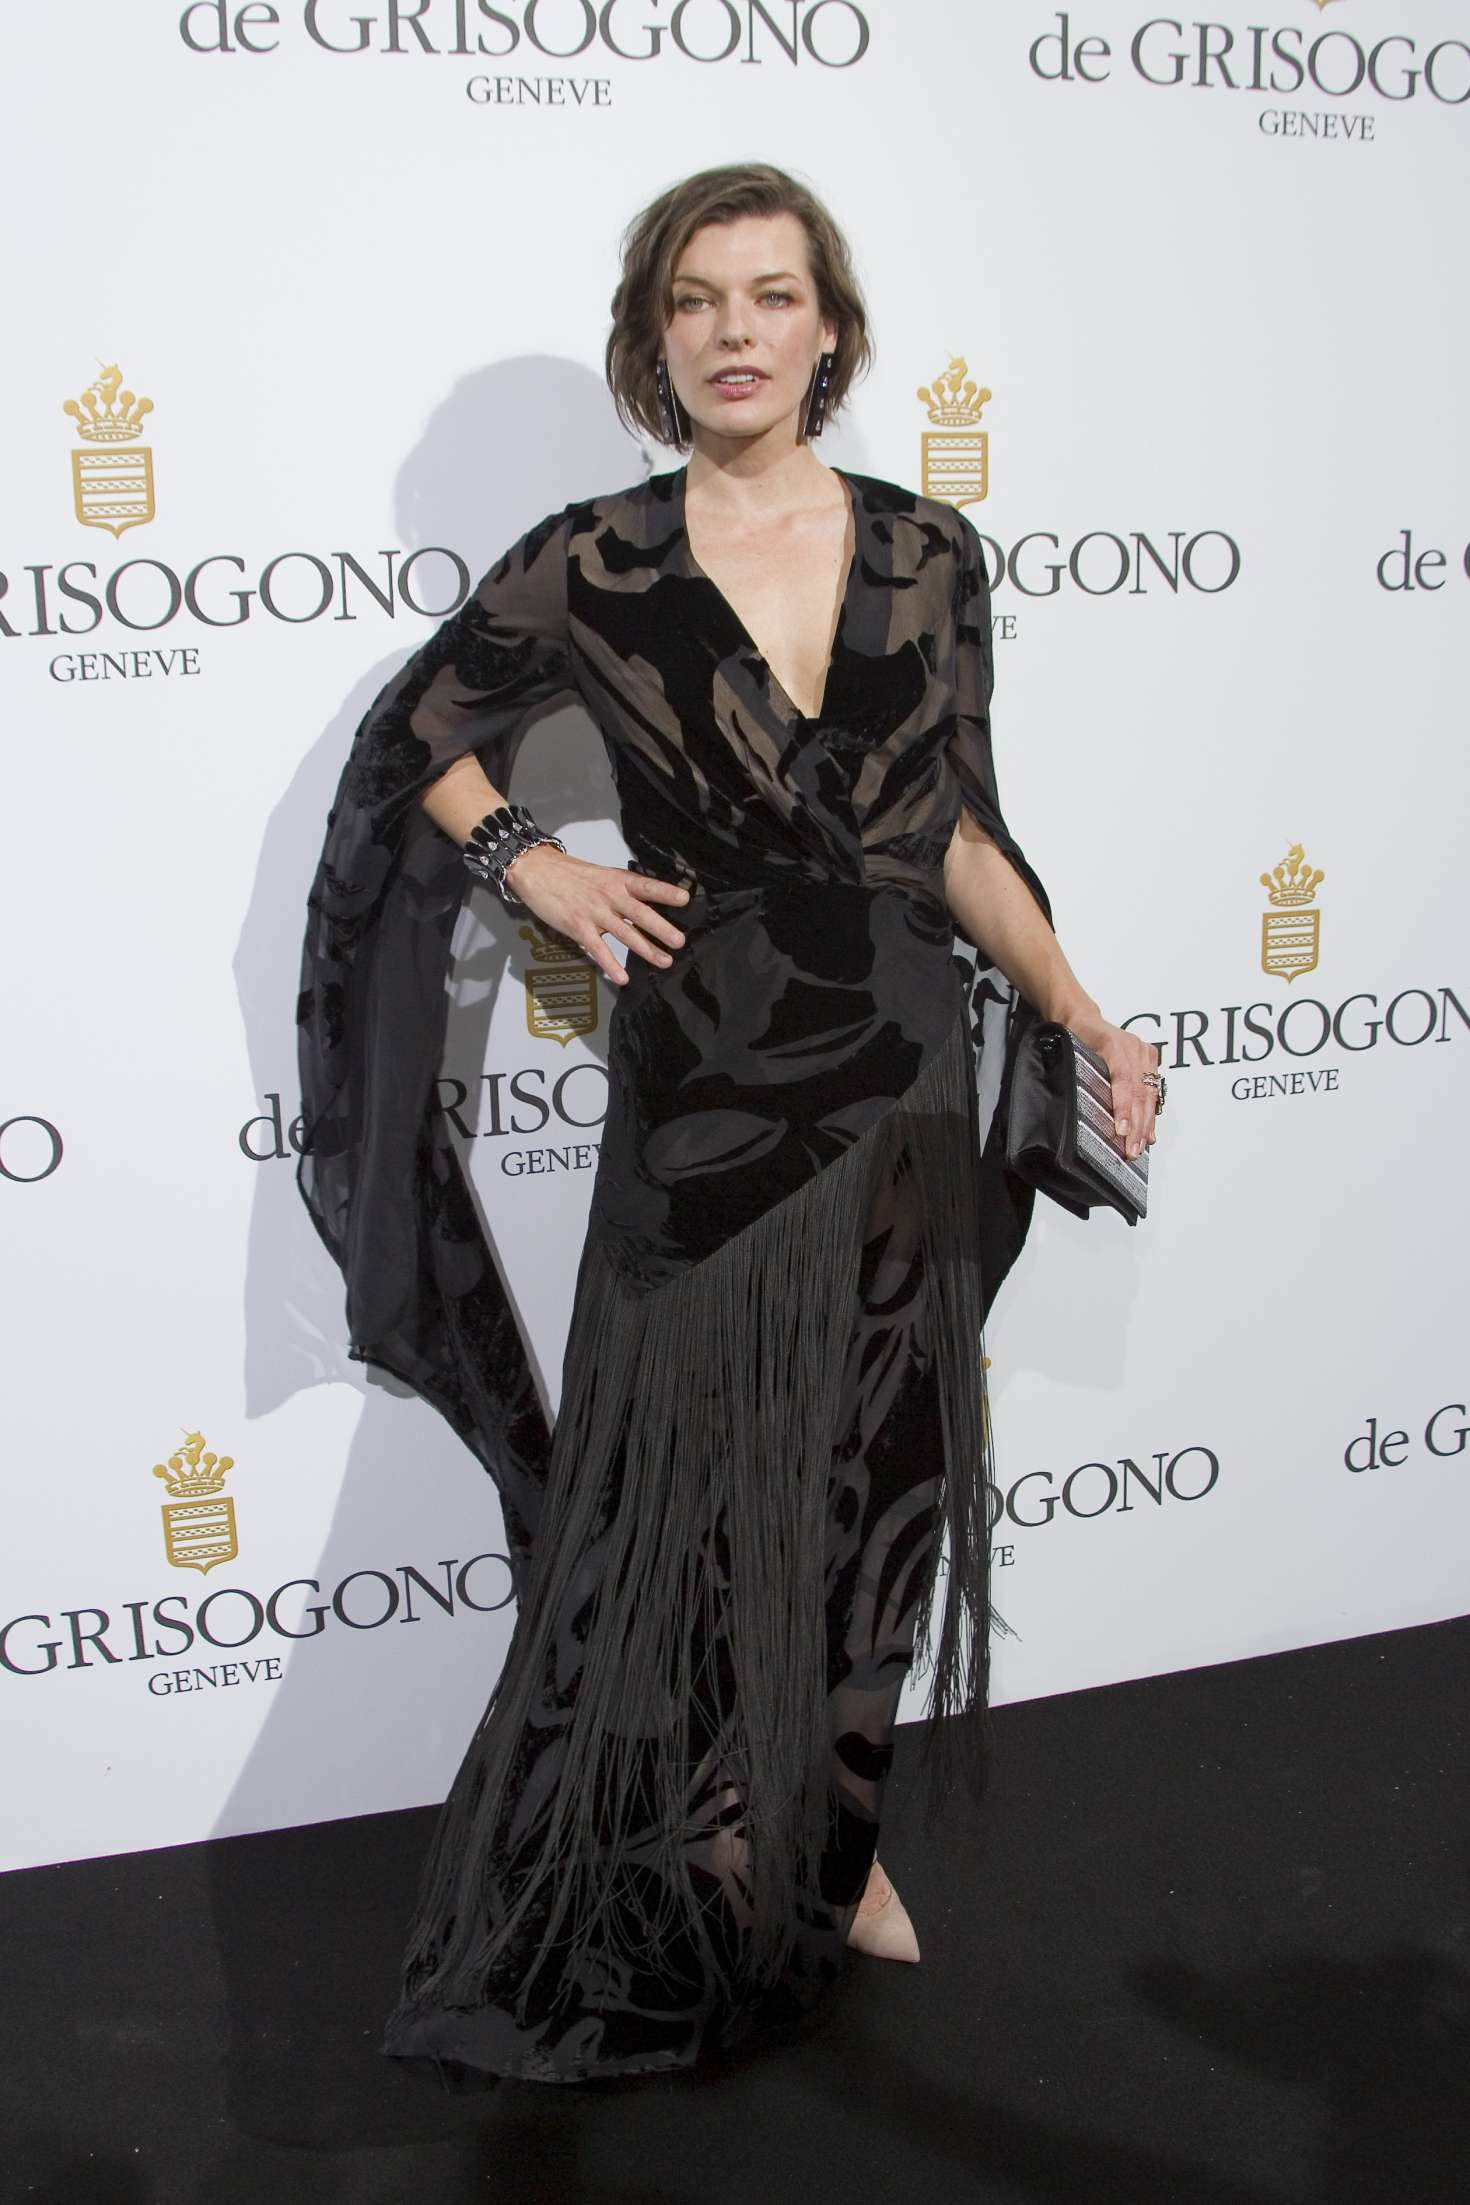 Milla Jovovich: De Grisogono Party at 70th Cannes Film Festival -05 ...